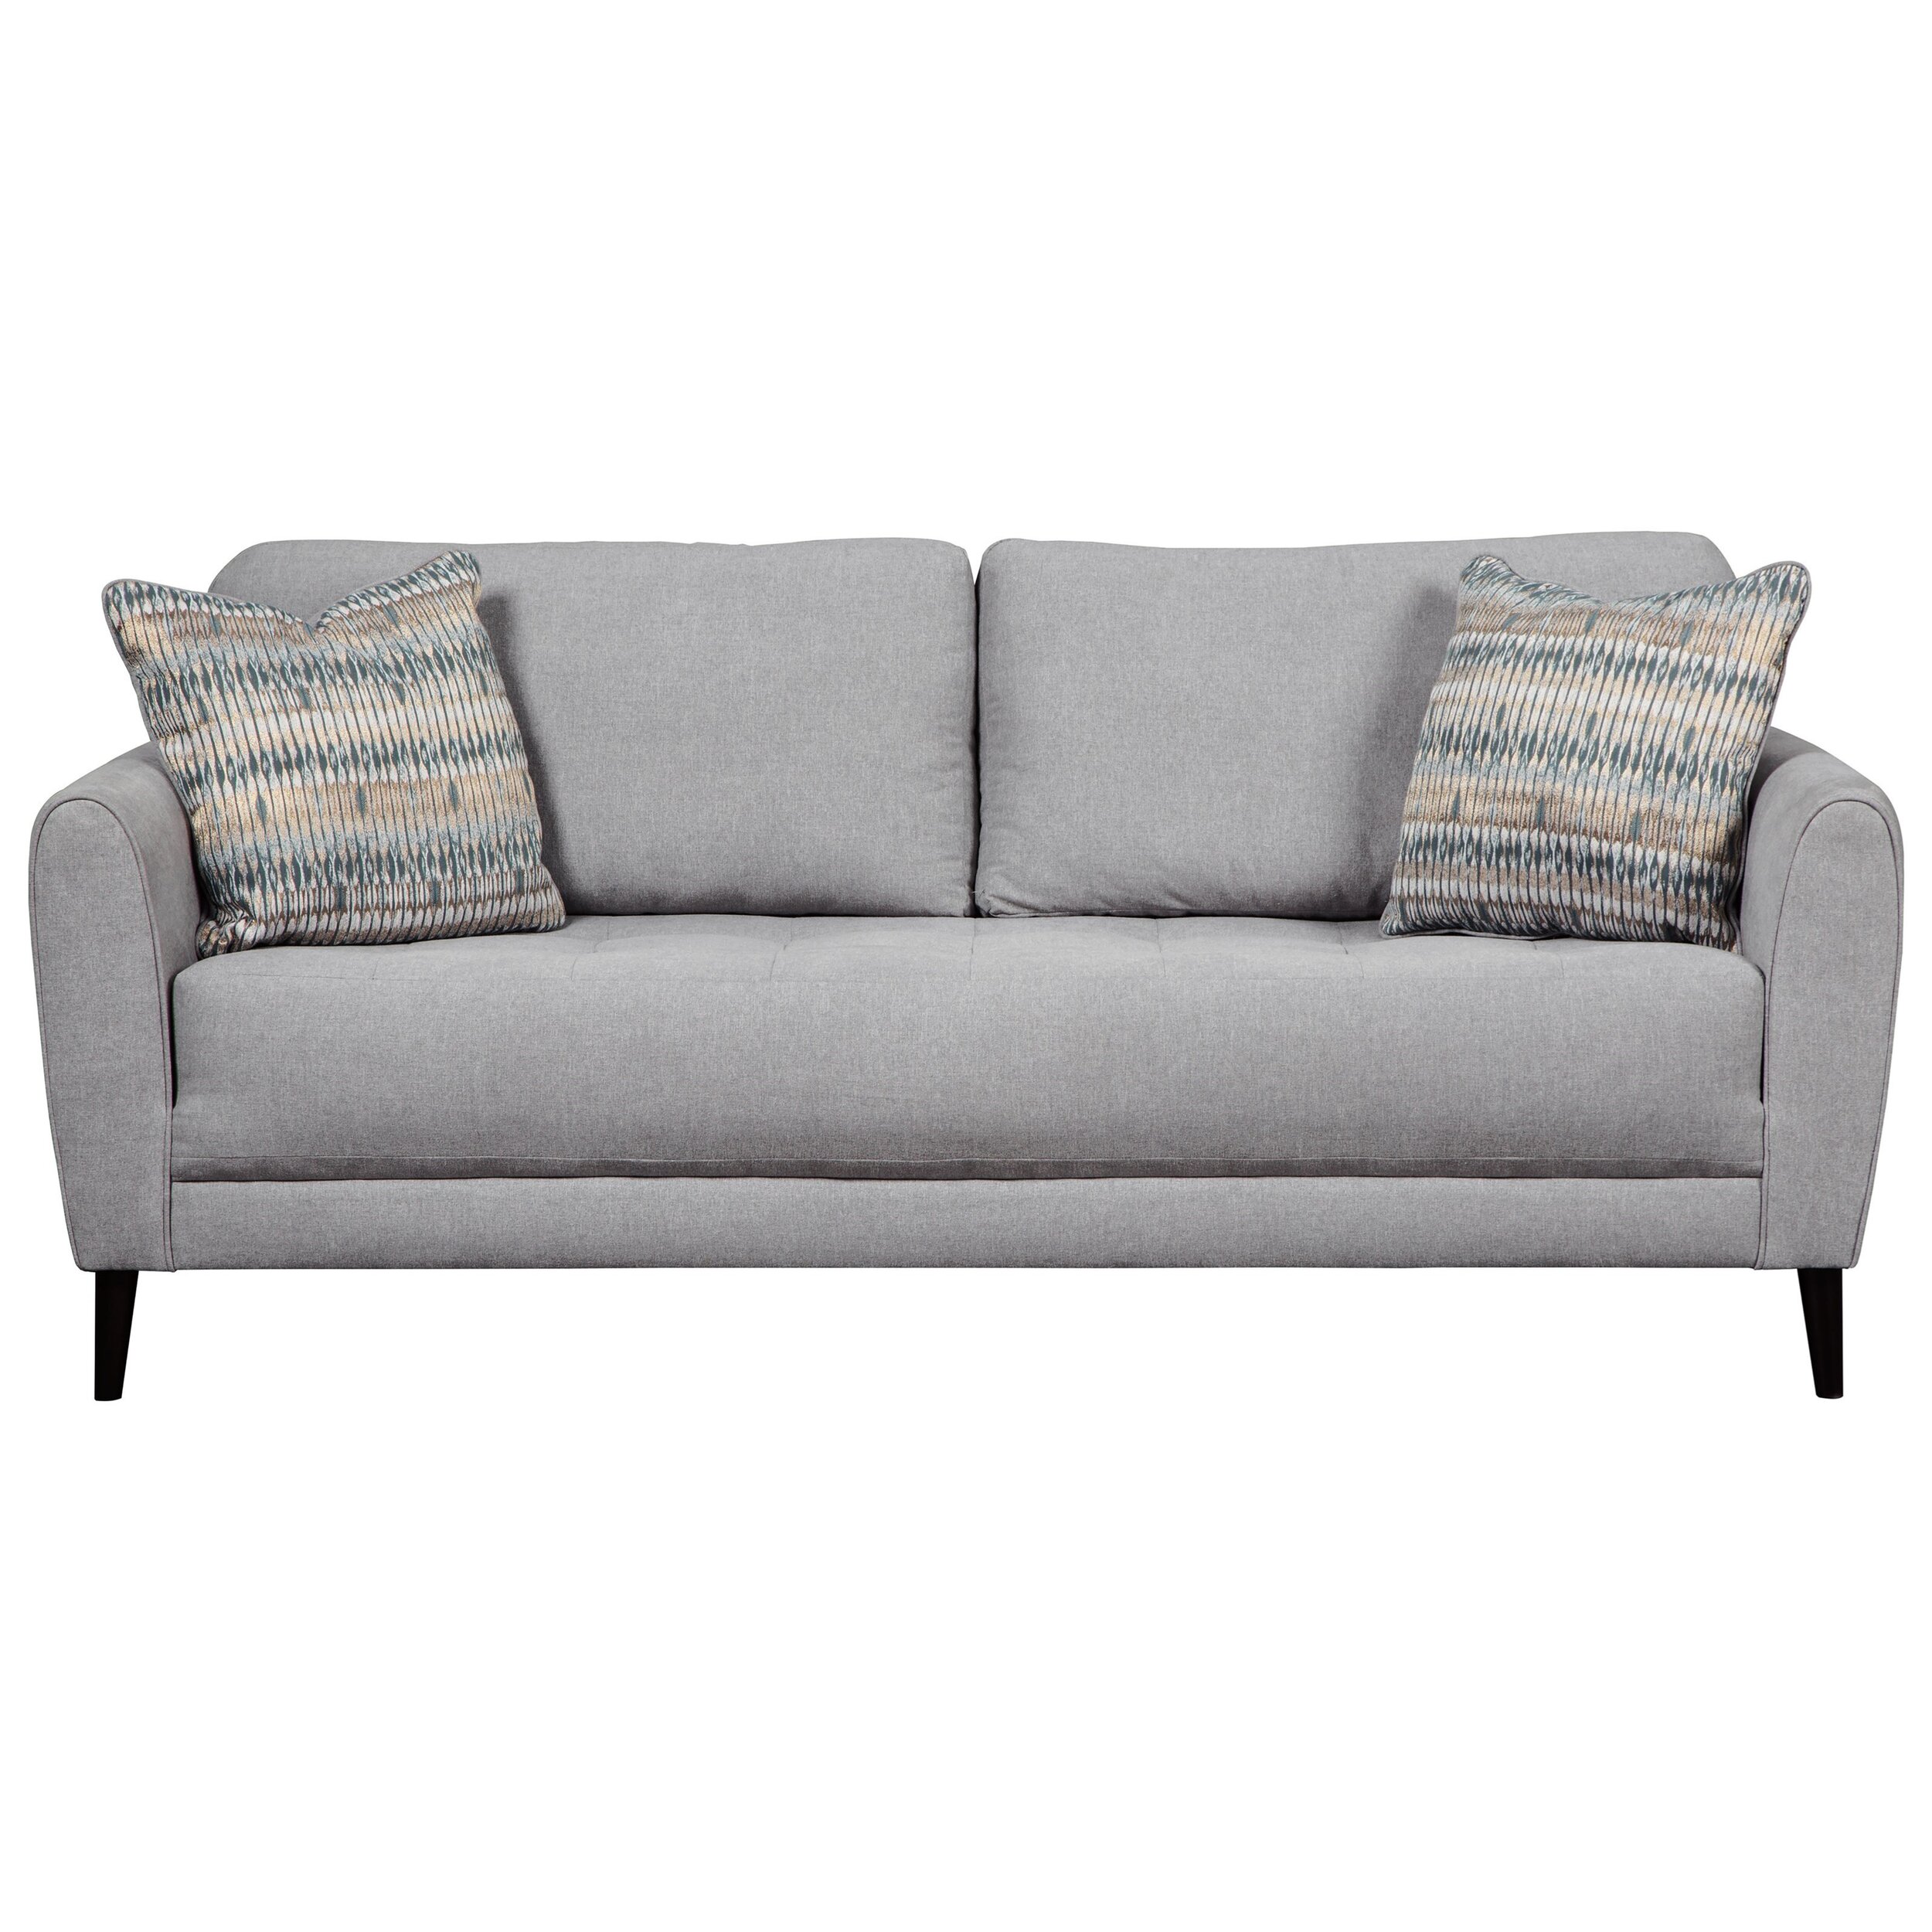 Contemporary Sofa- Belfort Furniture 